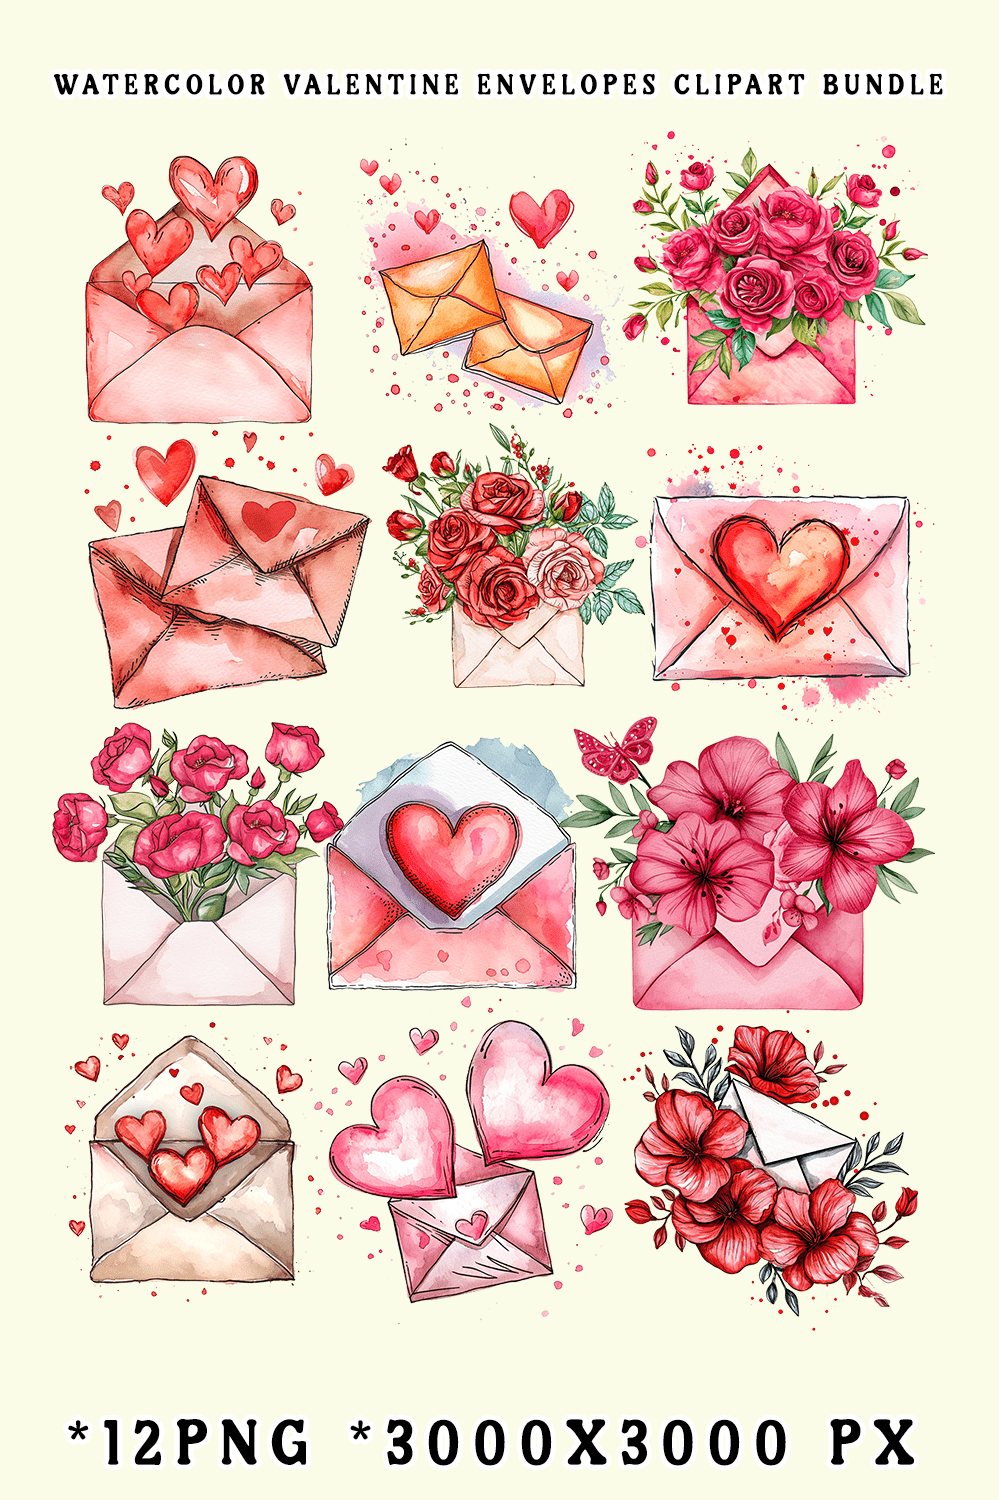 Watercolor Valentine Envelopes Clipart Bundle pinterest preview image.